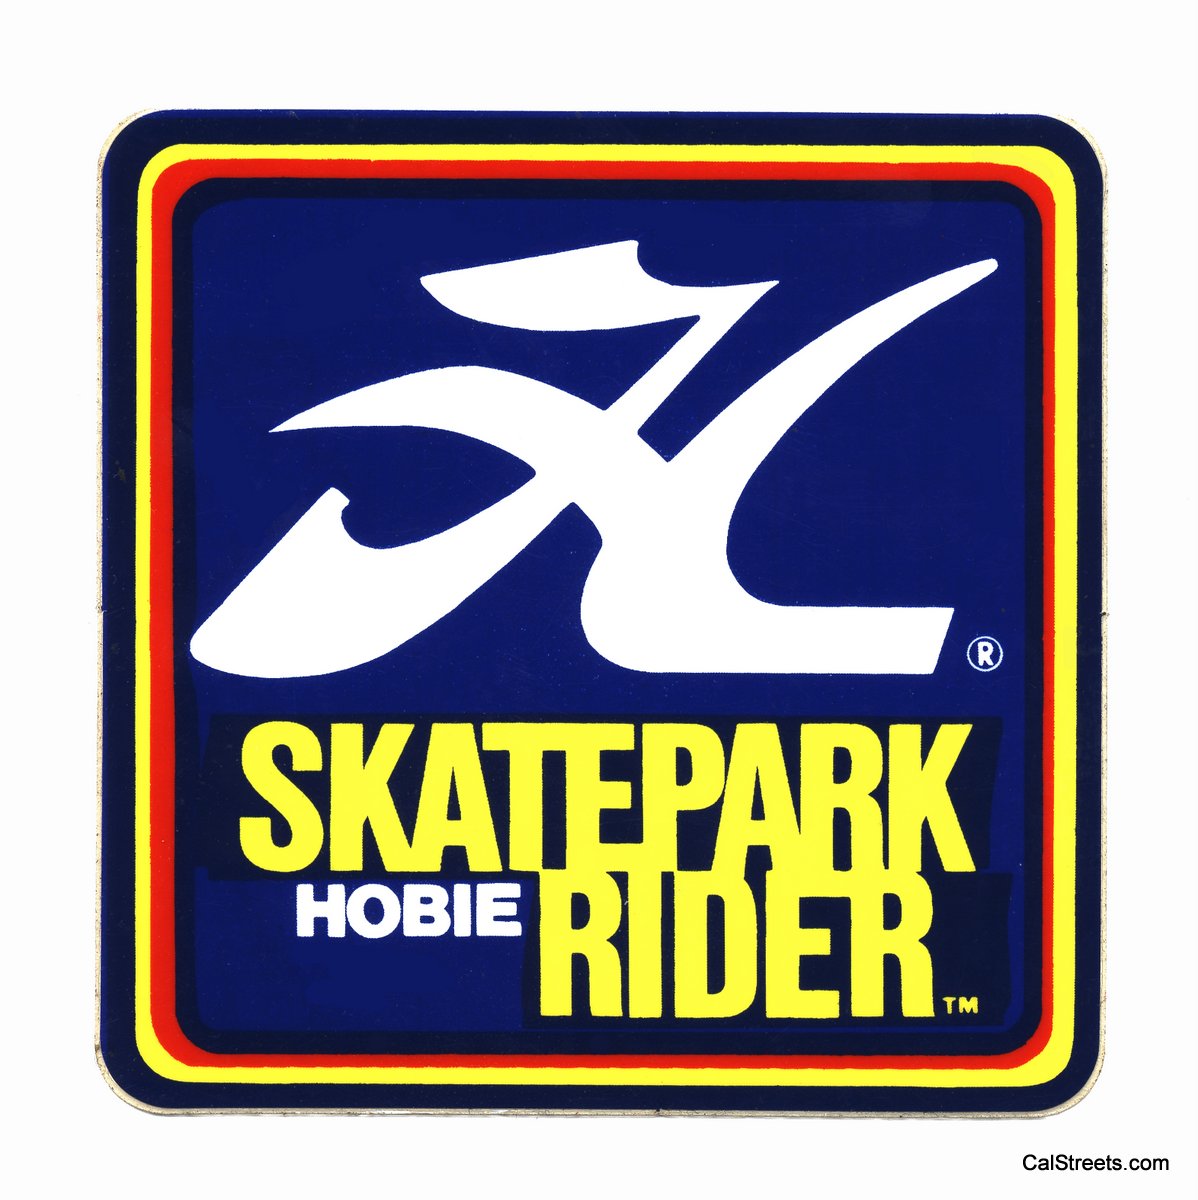 Hobie-Skatepark-Rider-SQH1.jpg